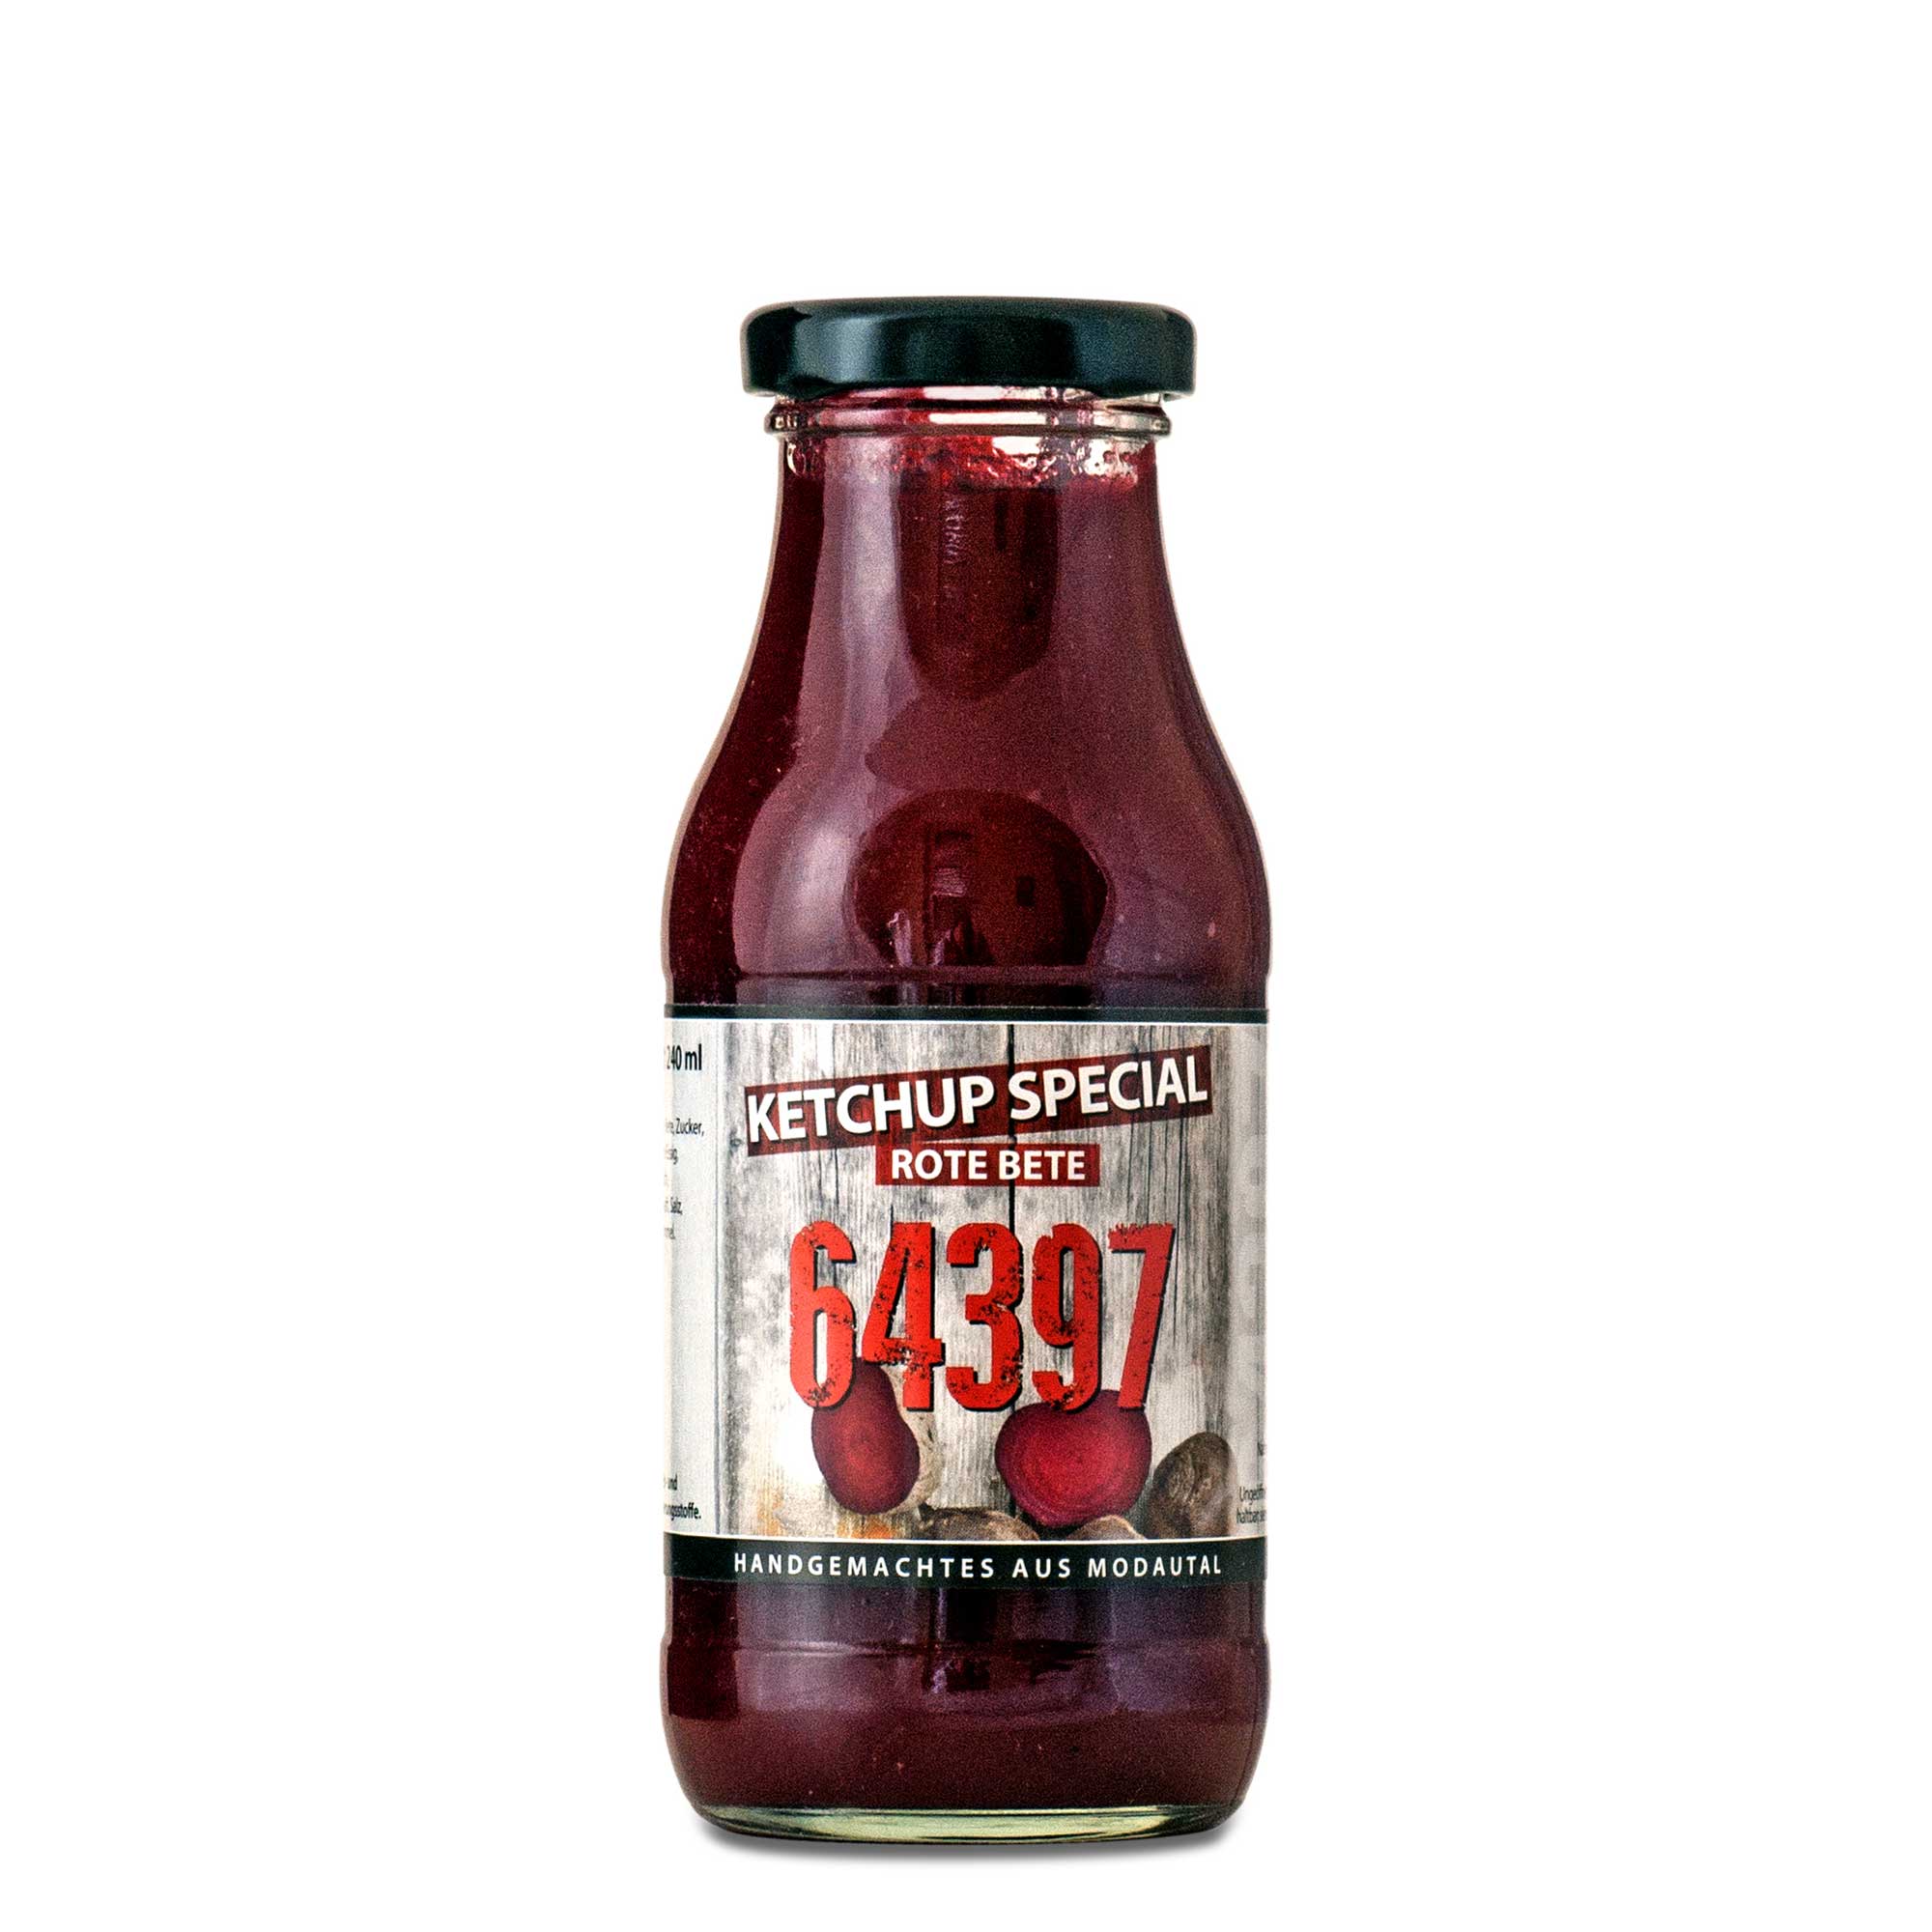 64397: Ketchup-Special "Rote Beete" aus Modaltal von Maries Franke-Focken